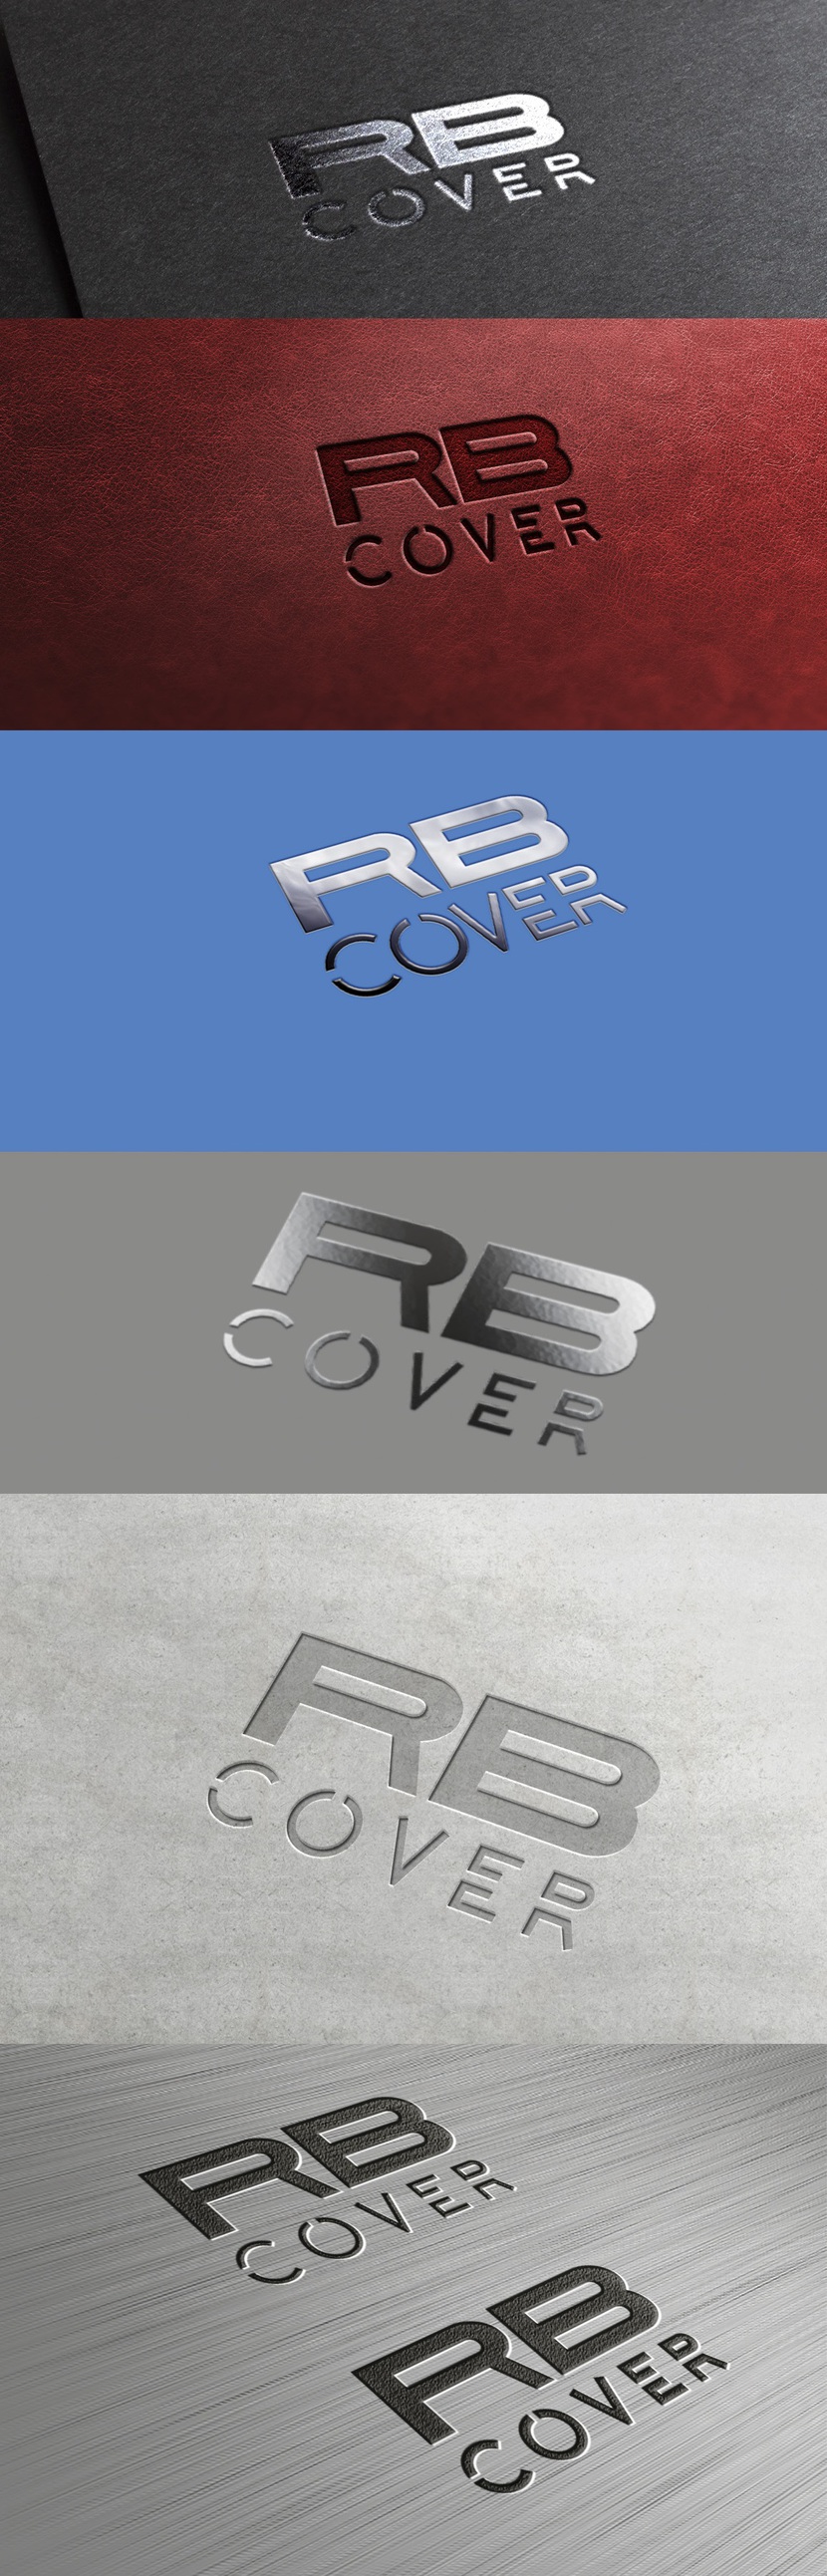 вертикальный вариант - Разработка логотипа для Торговой Марки  - RB Cover -